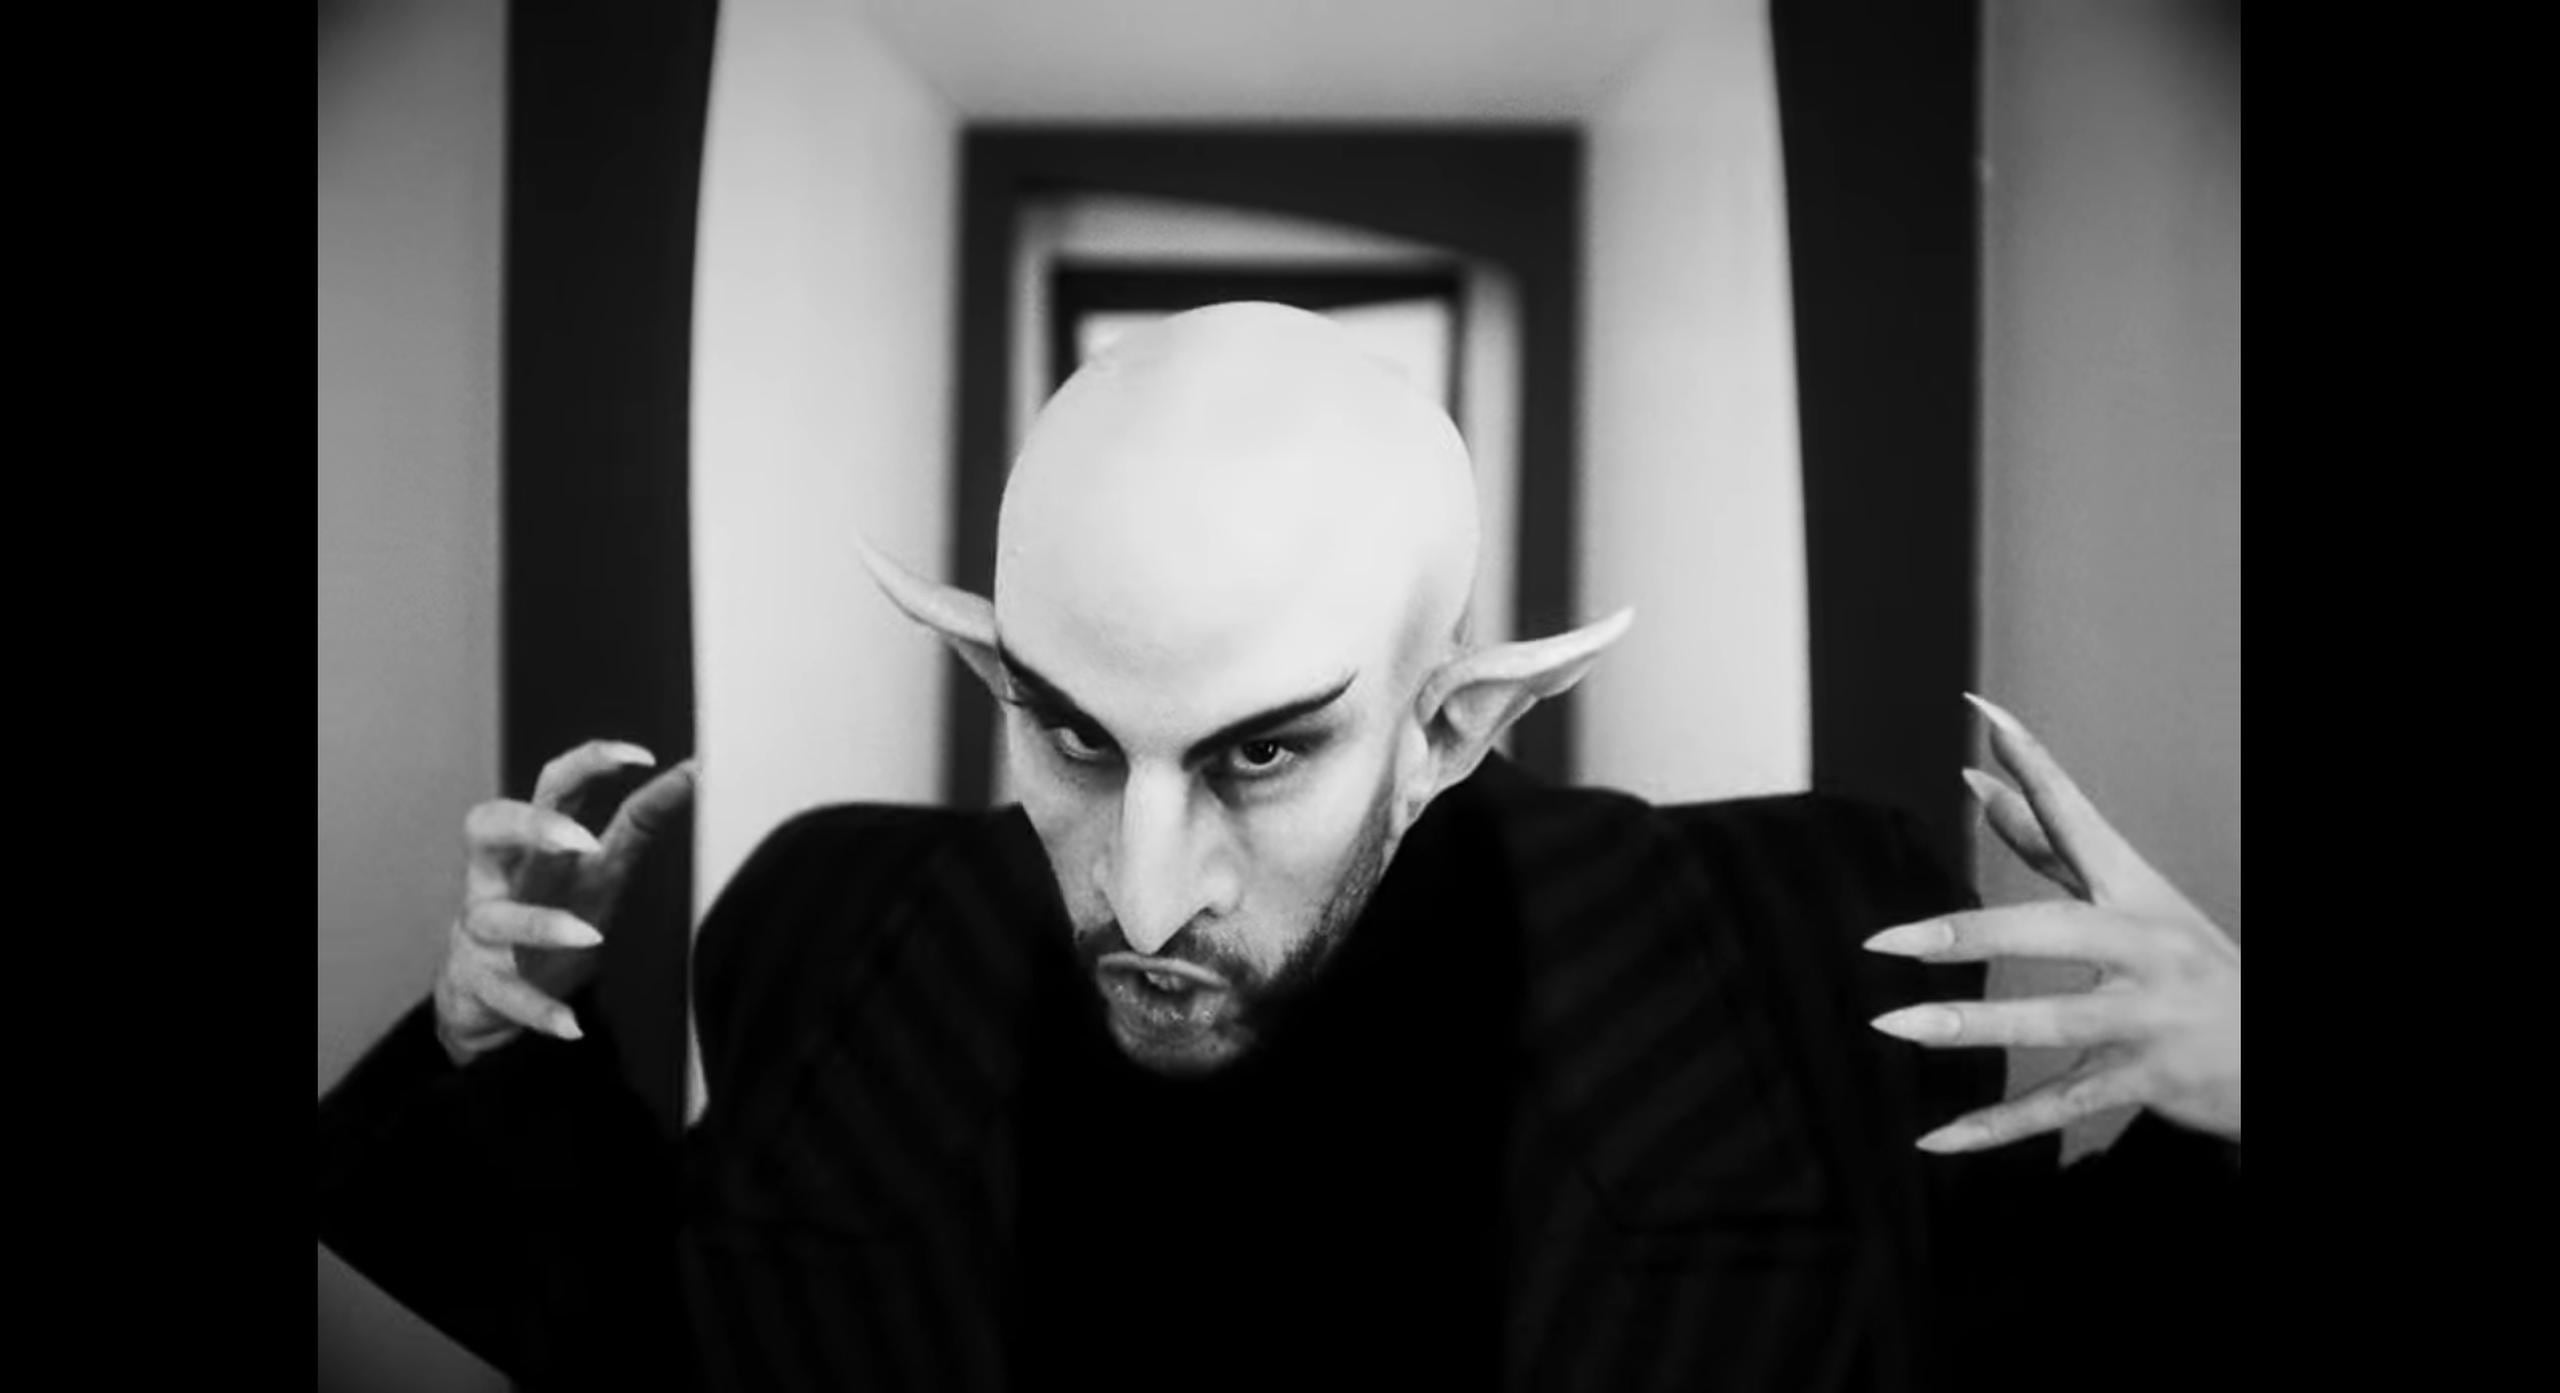 Bad Bunny reencarna al vampiro Nosferatu en su nuevo video musical.